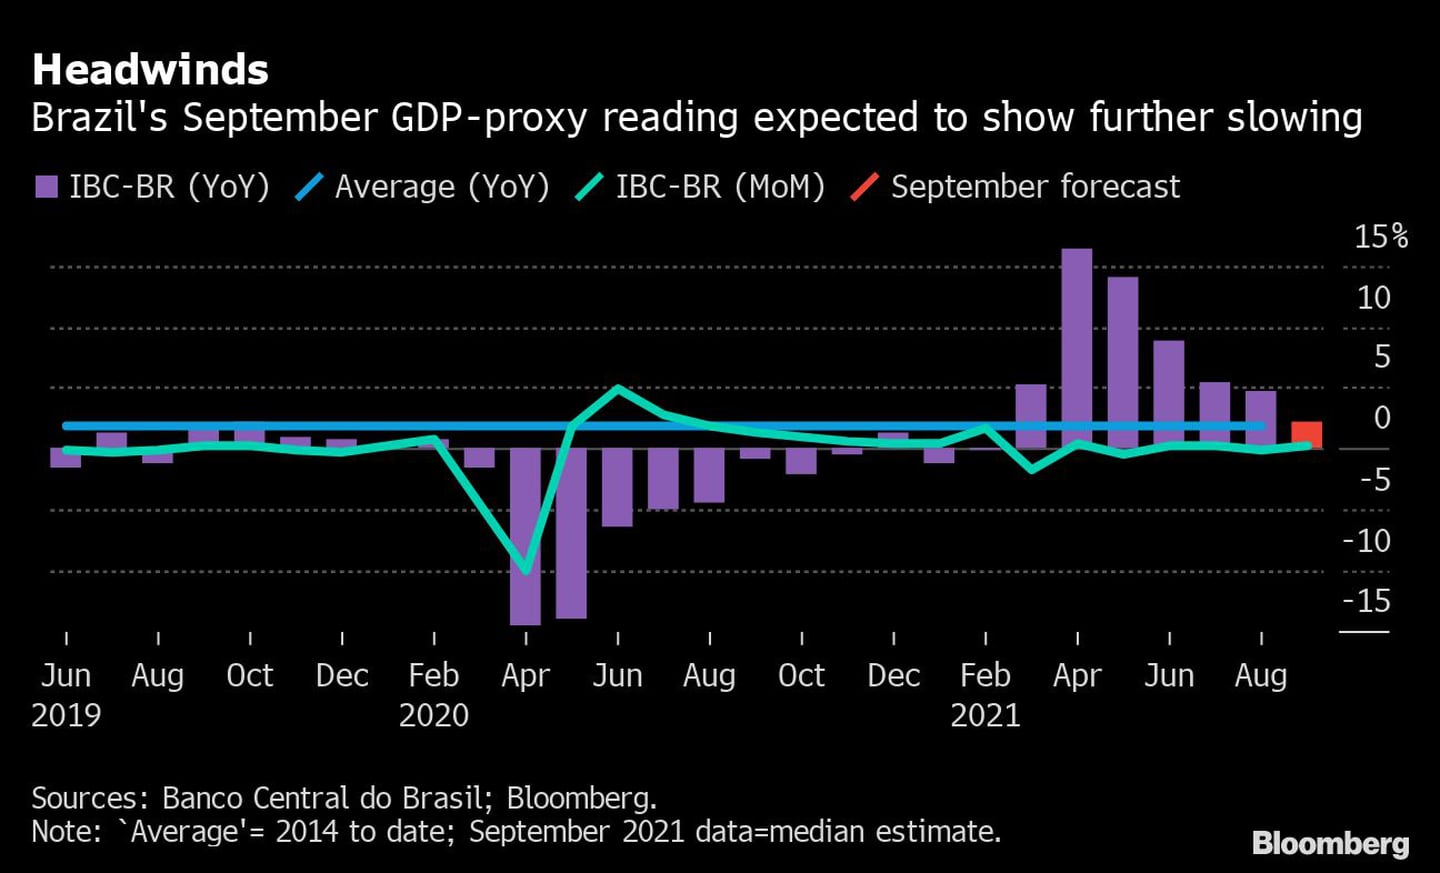 IBC-Br de setembro, considerado prévia do PIB, deve mostrar desaceleraçãodfd